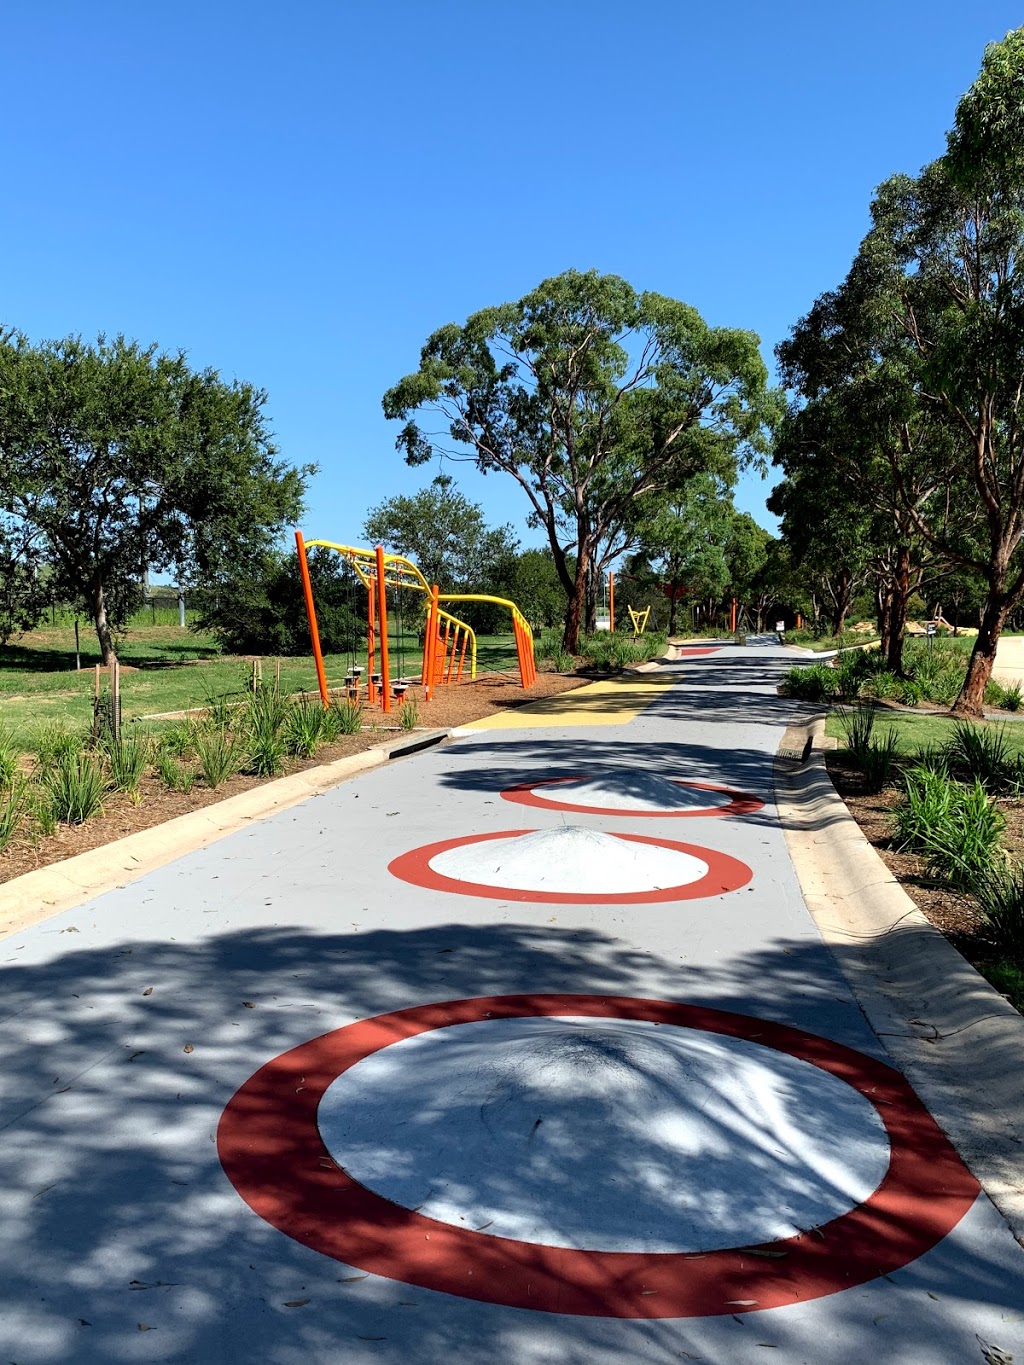 Harrington Park Lake Youth Play Space | park | 1A Fairwater Dr, Harrington Park NSW 2567, Australia | 0246547777 OR +61 2 4654 7777